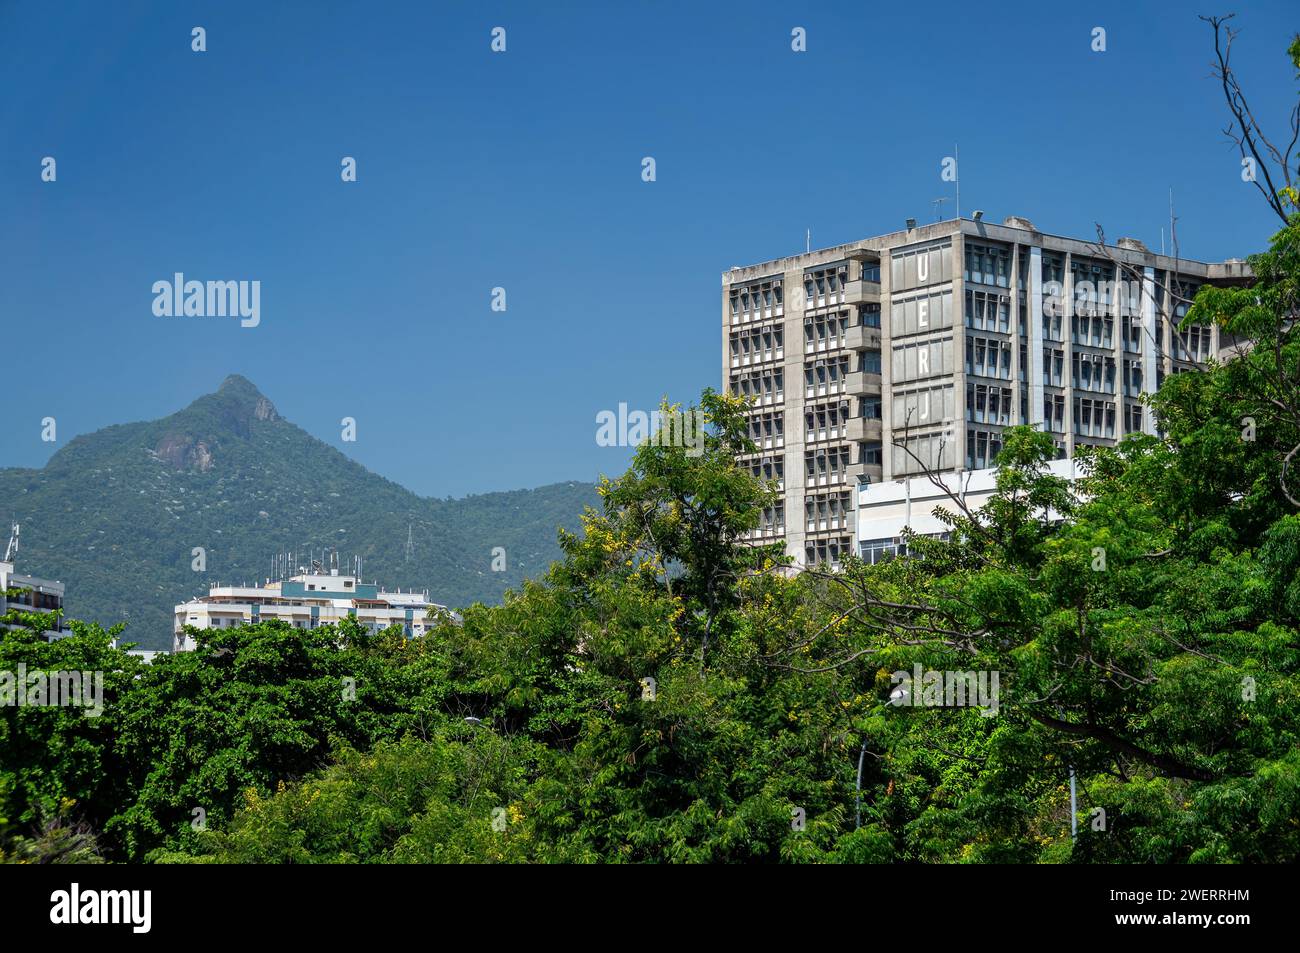 Vue partielle de l'un des blocs de construction de l'Université d'État de Rio de Janeiro (UERJ) avec beaucoup d'arbres de végétation verte à elle sous le ciel bleu d'été. Banque D'Images